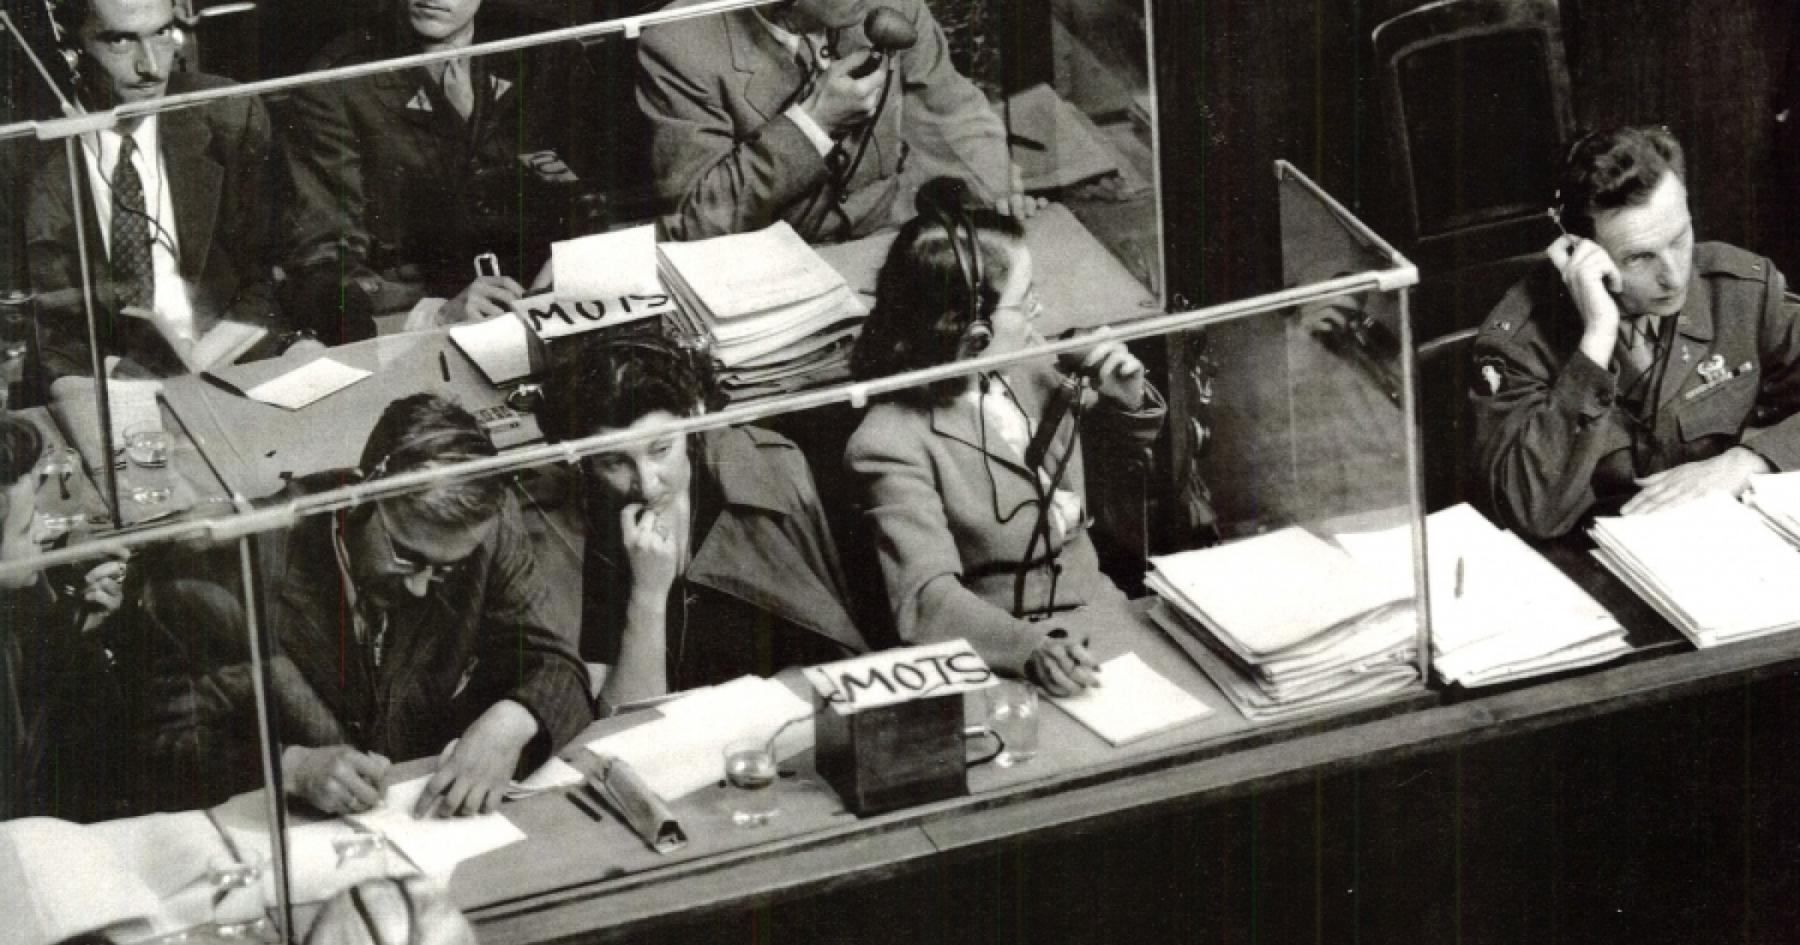 кабинка переводчиков на Нюрнбергском процессе